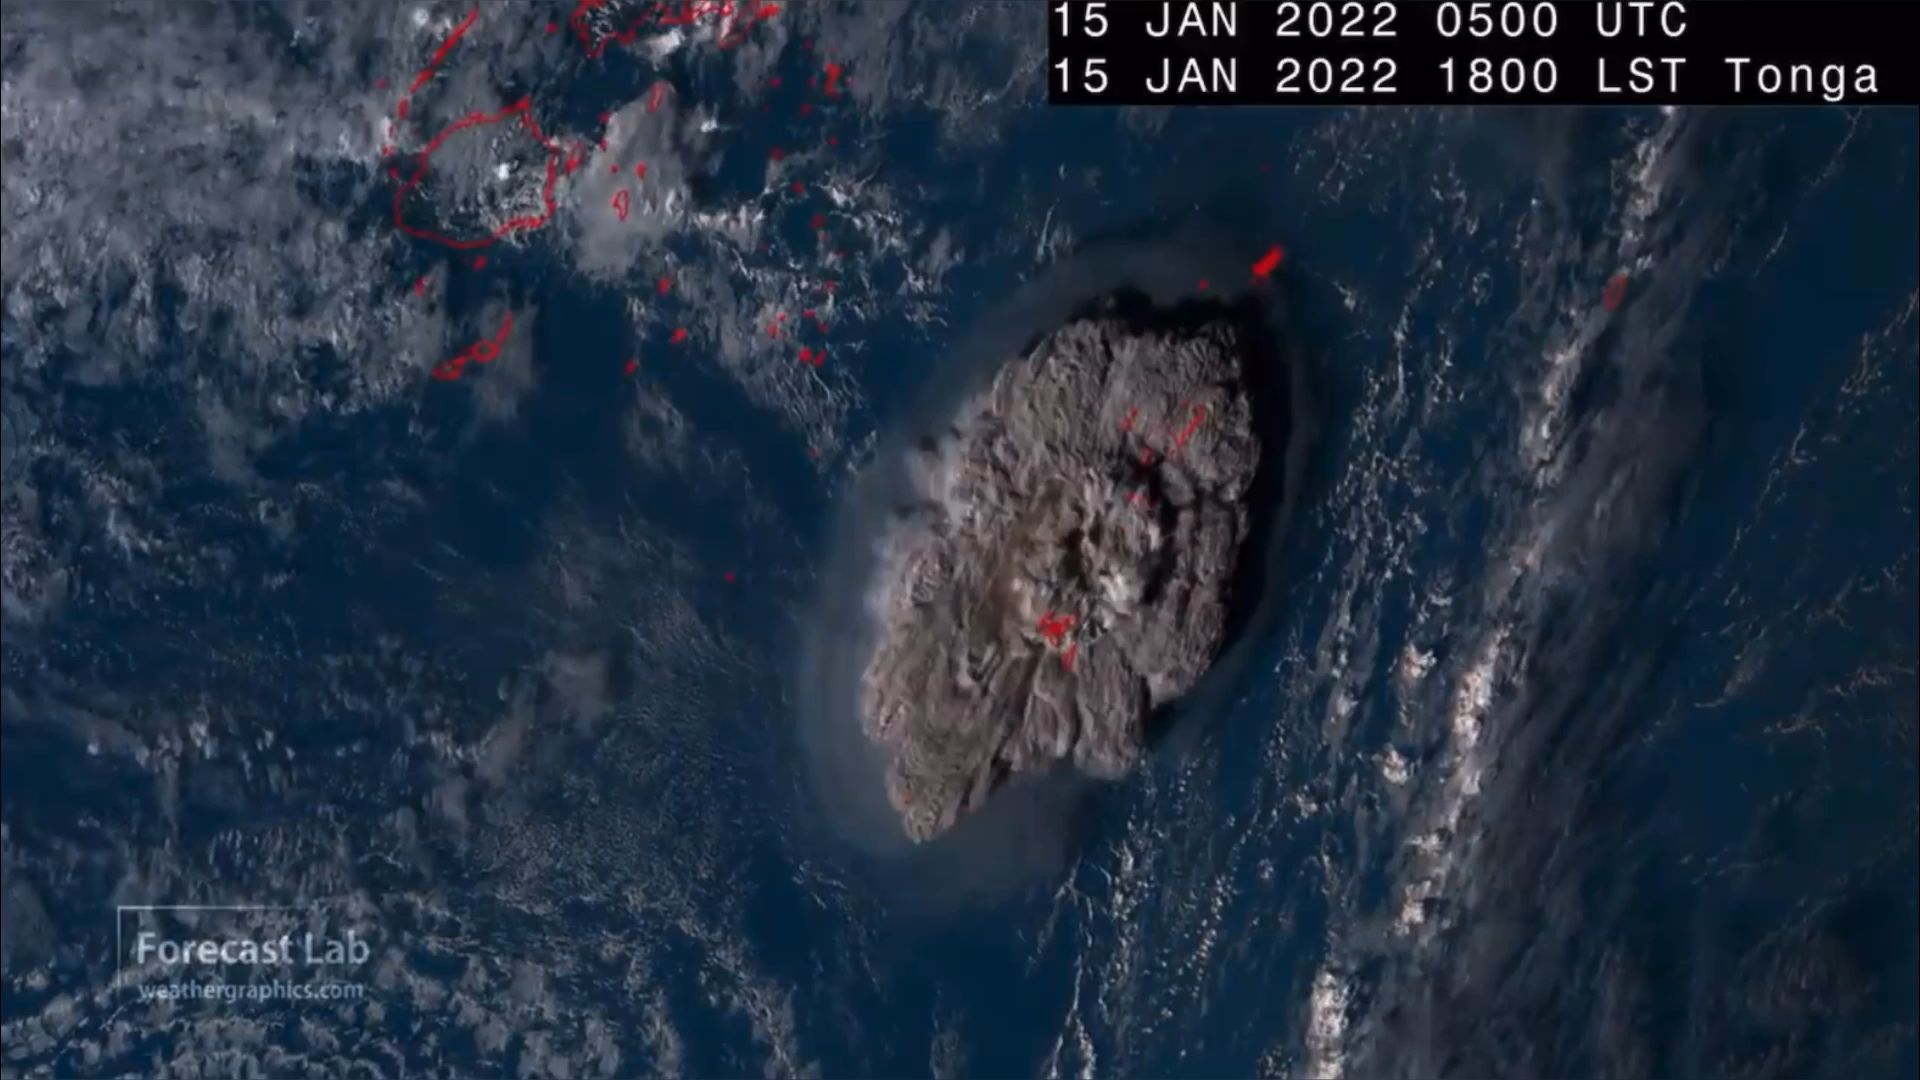 汤加火山卫星地图图片